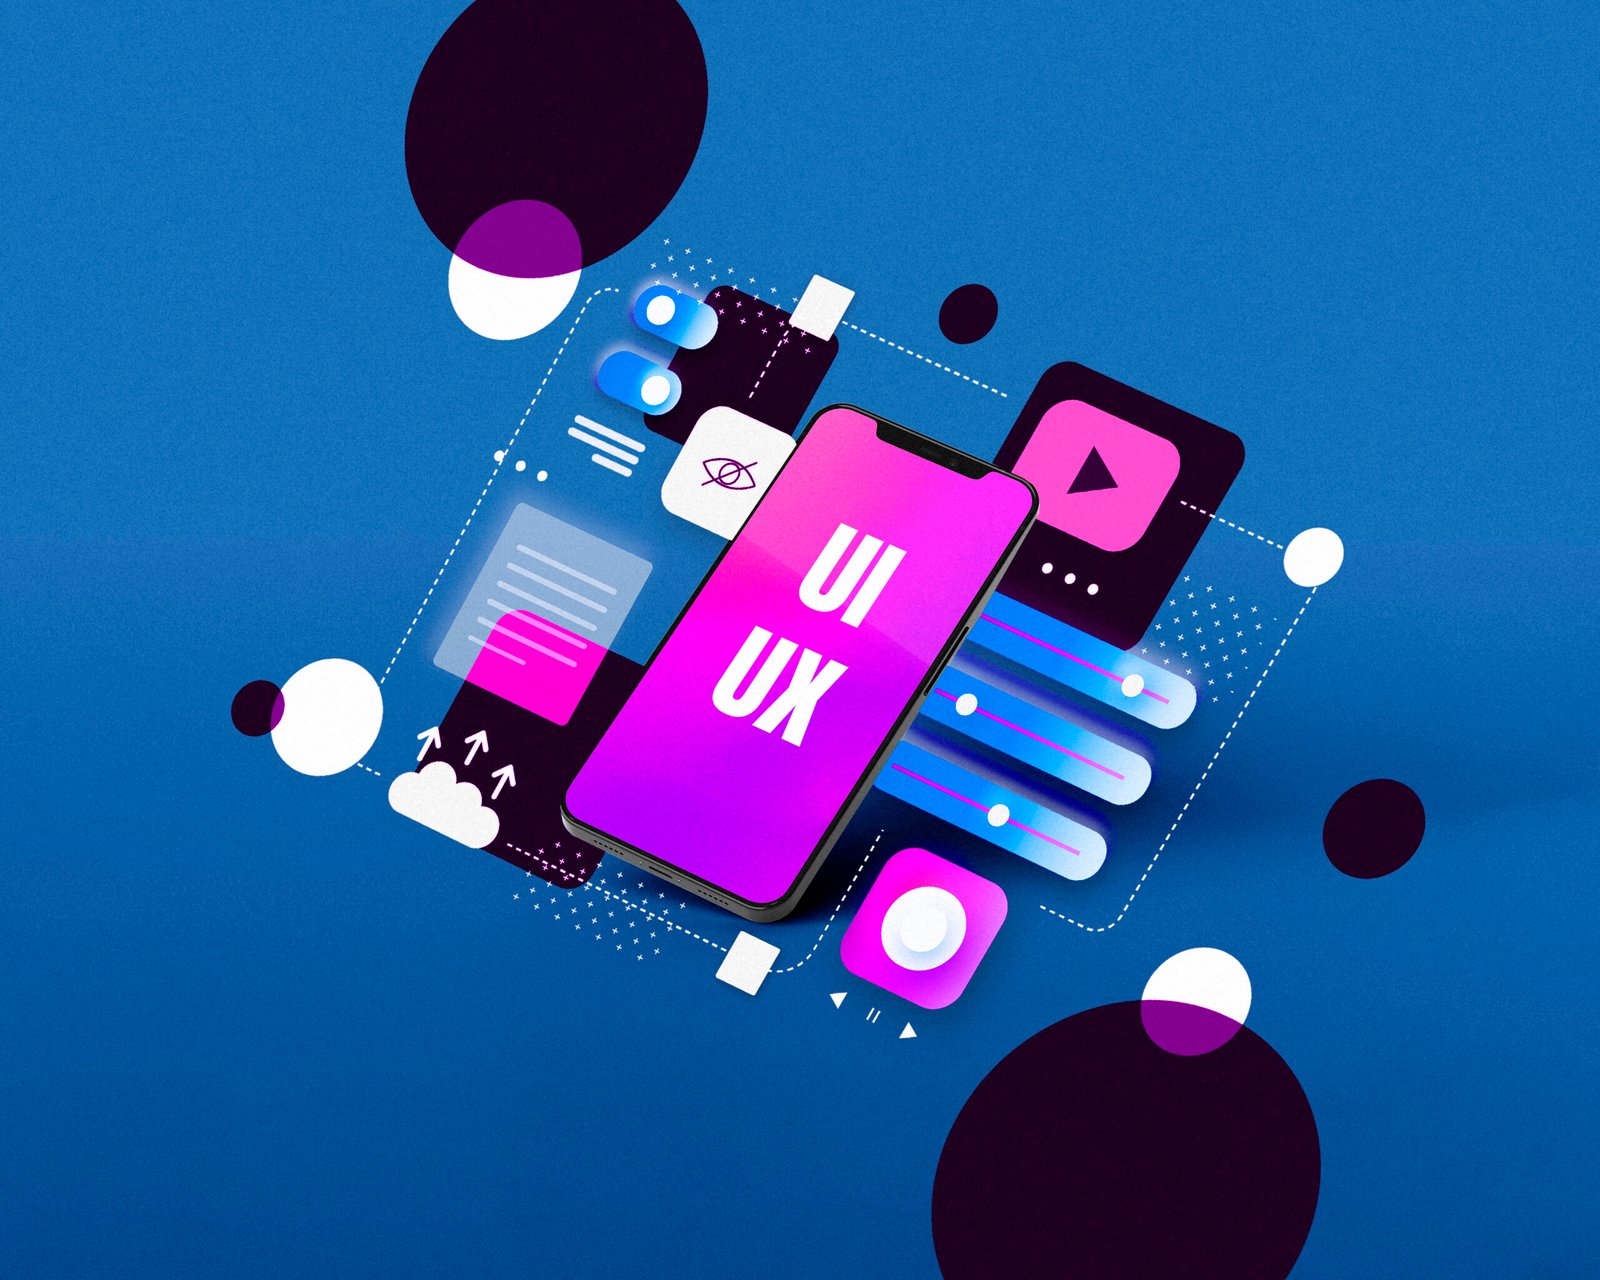 UI UX Design 